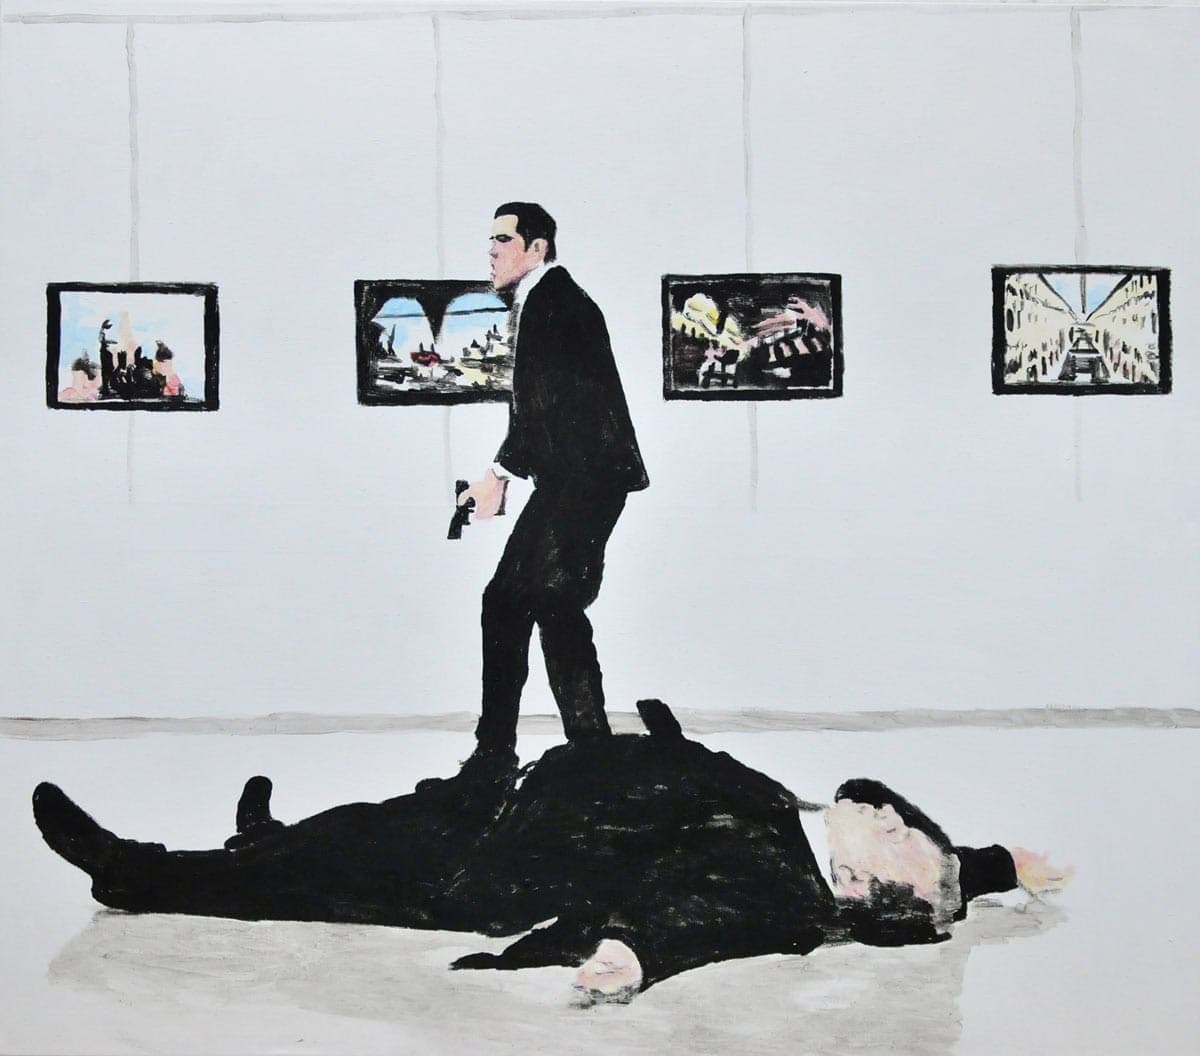 Bad Modern Art, יצירה נוספת של דוד ריב שהוצגה במוזאון רמת גן (צילום: מוזאון רמת גן)